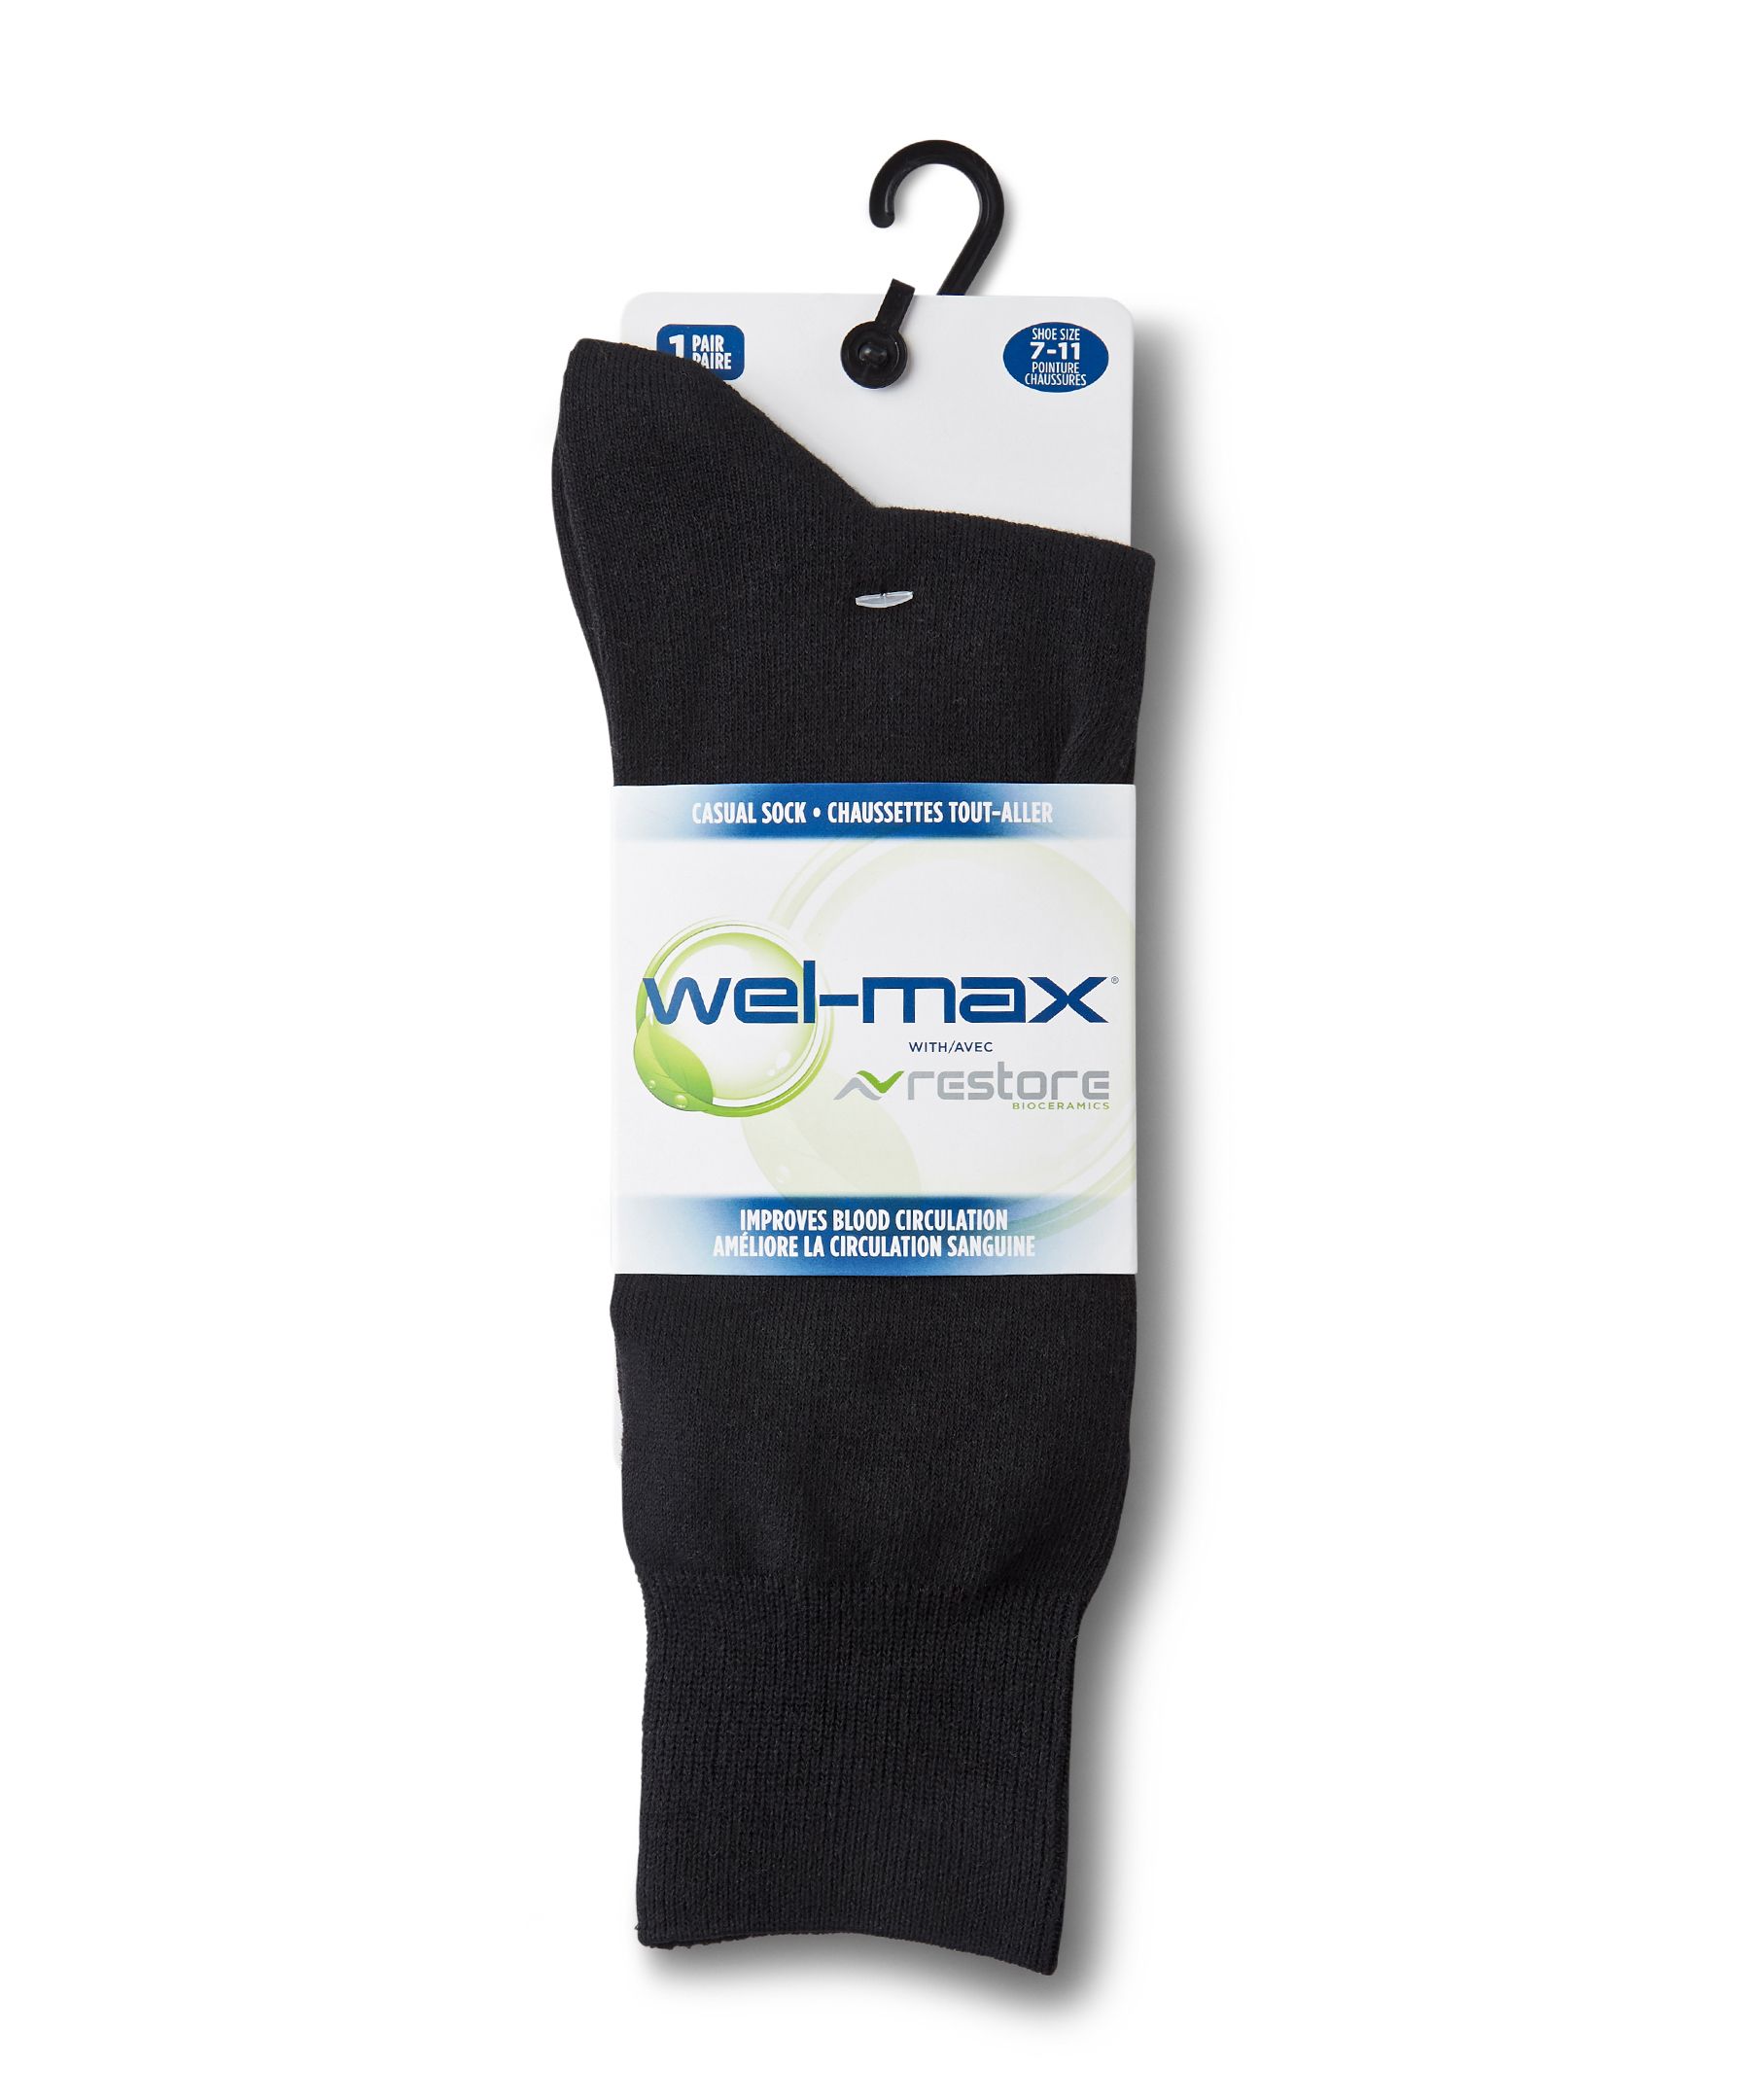 Wel-max Men's Bioceramic Flat Knit Casual Socks